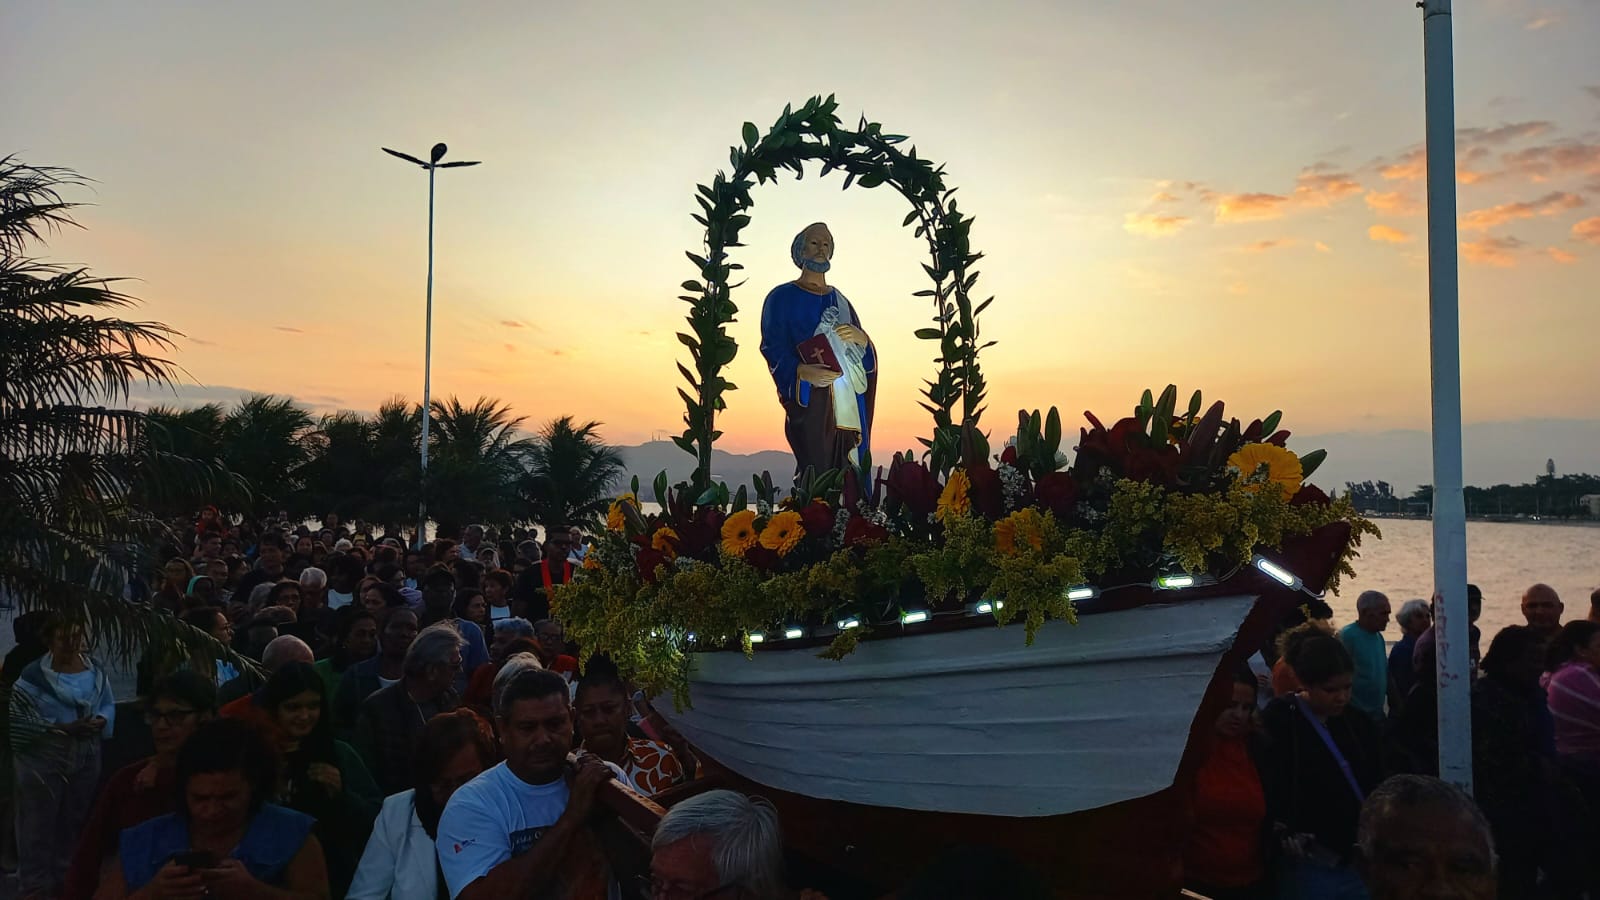 Celebrações em homenagem a São Pedro encantam fiéis em tradicional festividade em São Pedro da Aldeia